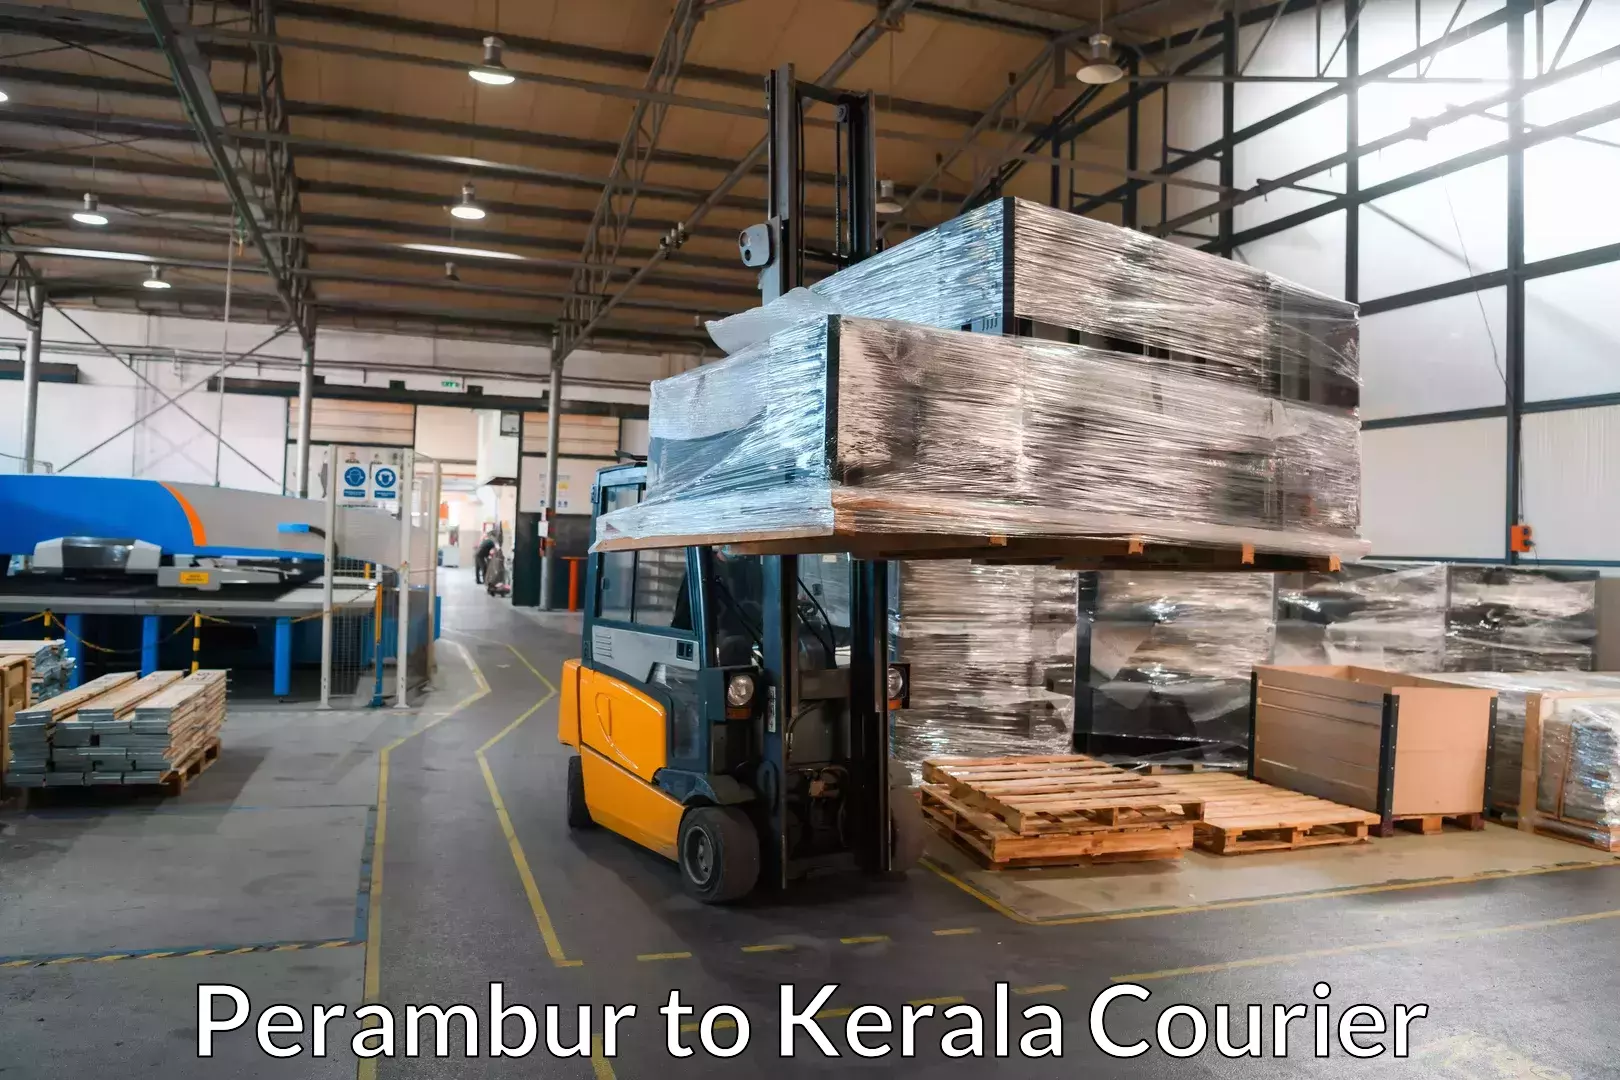 Professional moving strategies in Perambur to Trivandrum